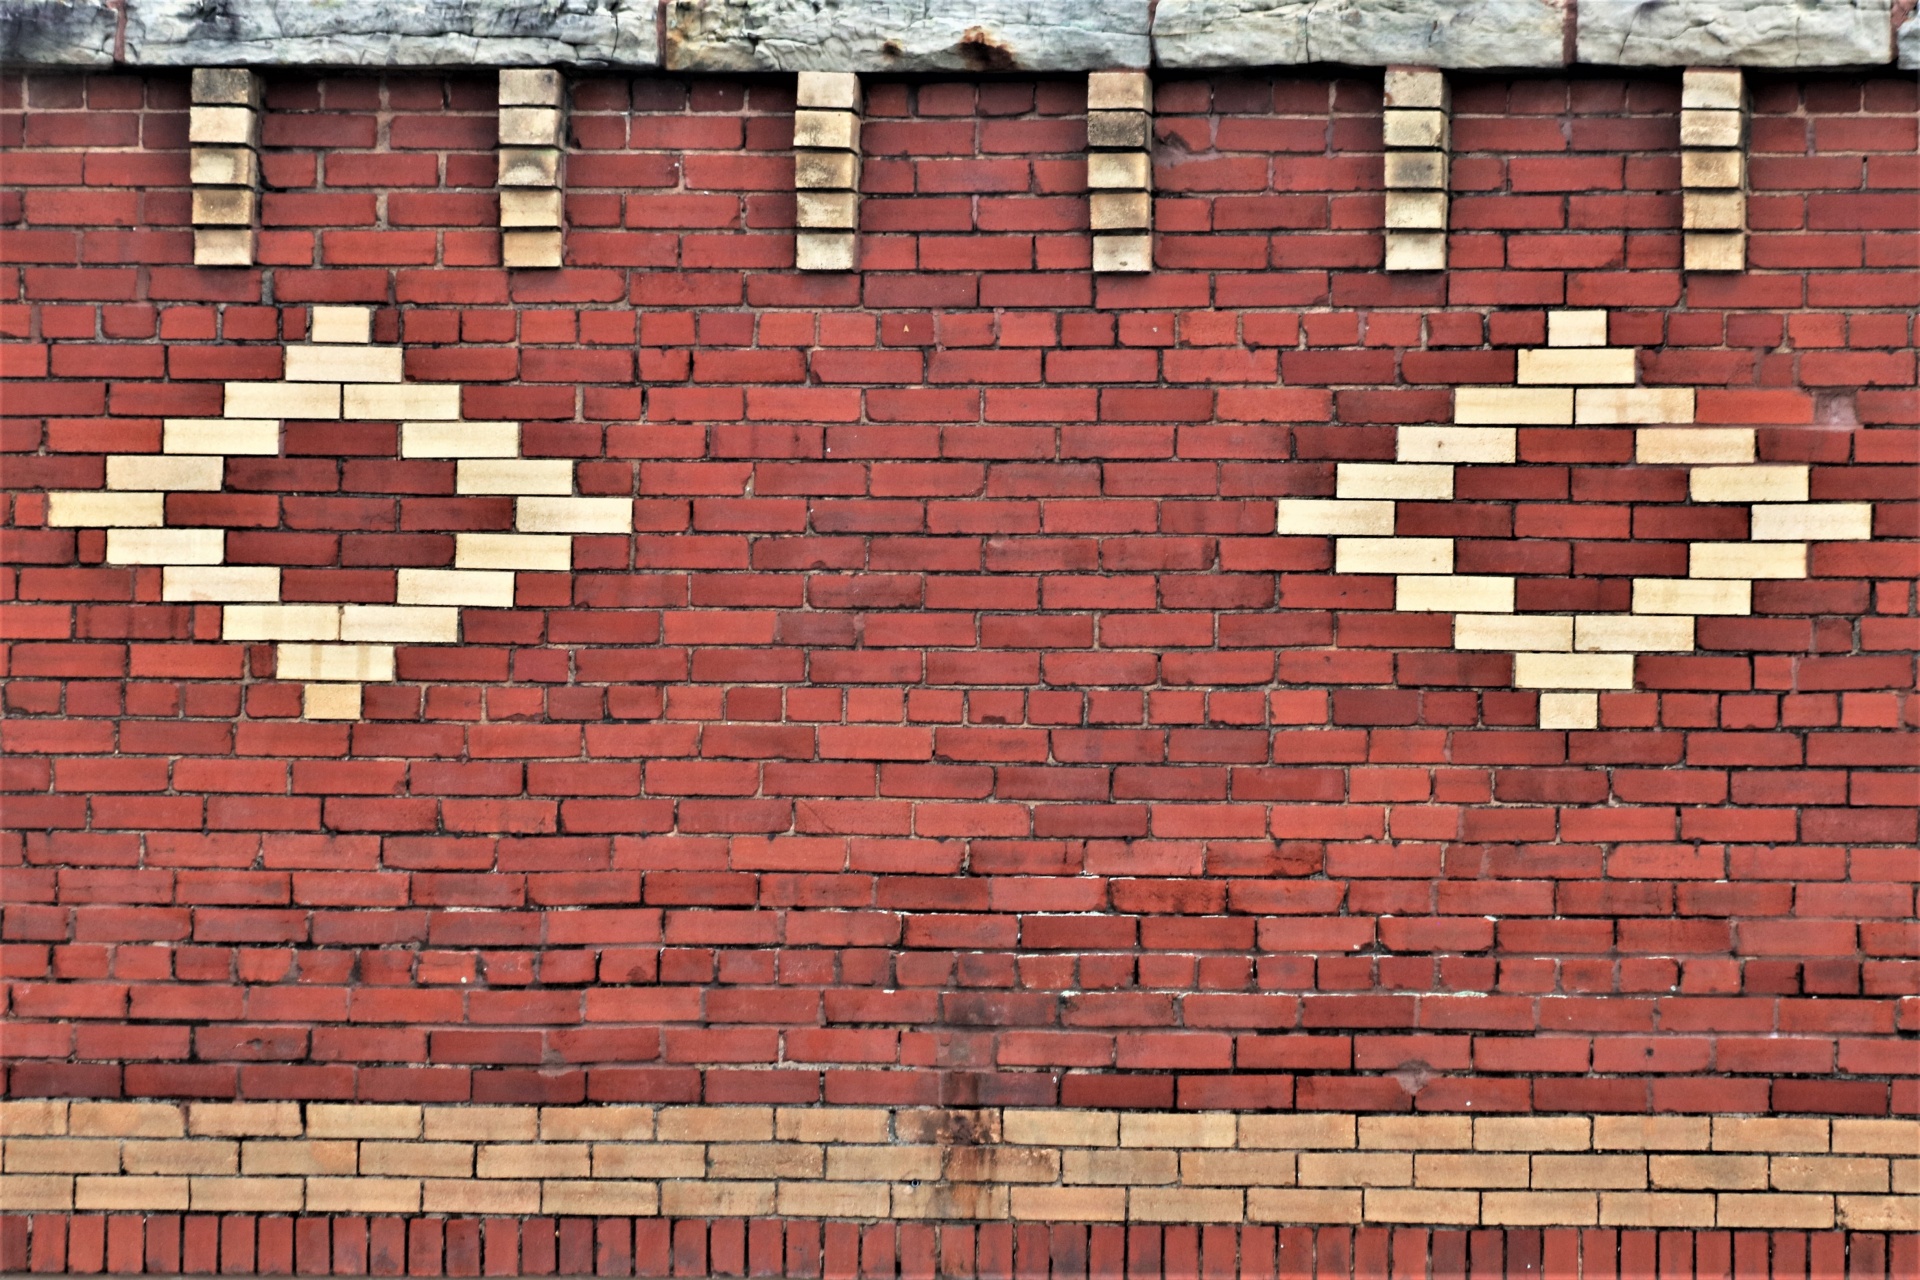 Diamond Patterns On Brick Wall